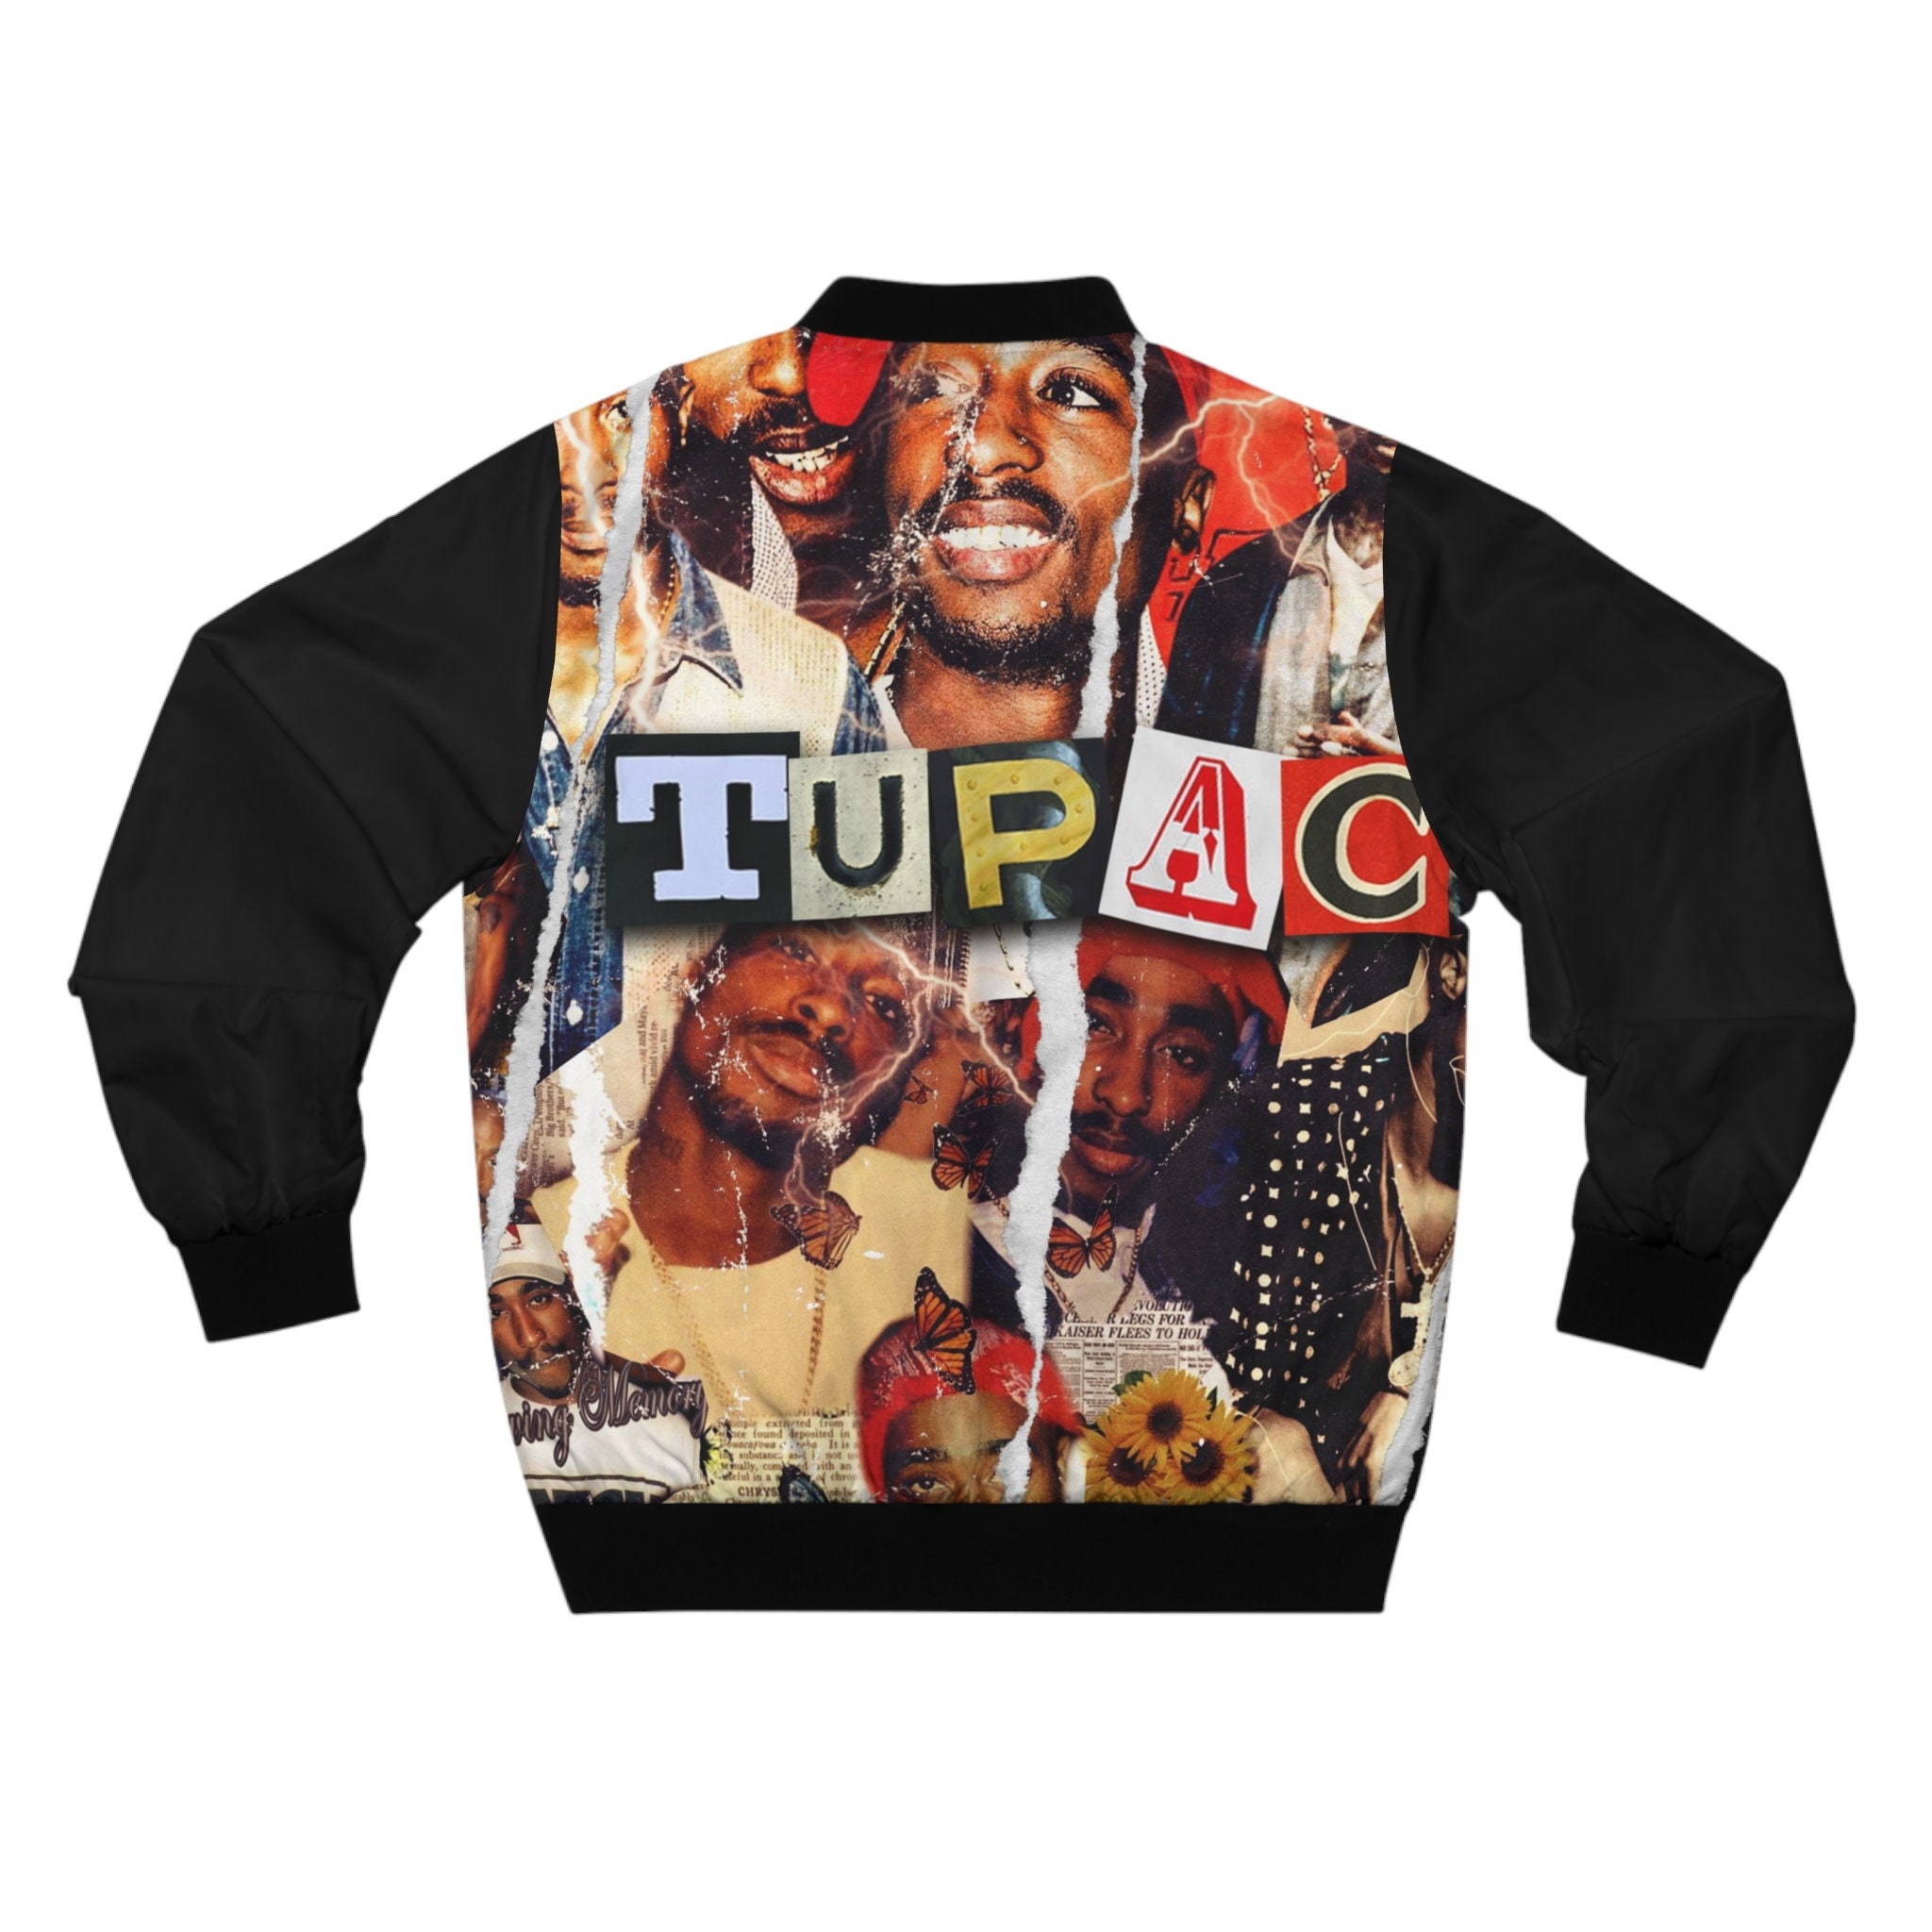 Tupac Collage Bomber Jacket, 2pac Tupac Bomber Jacket